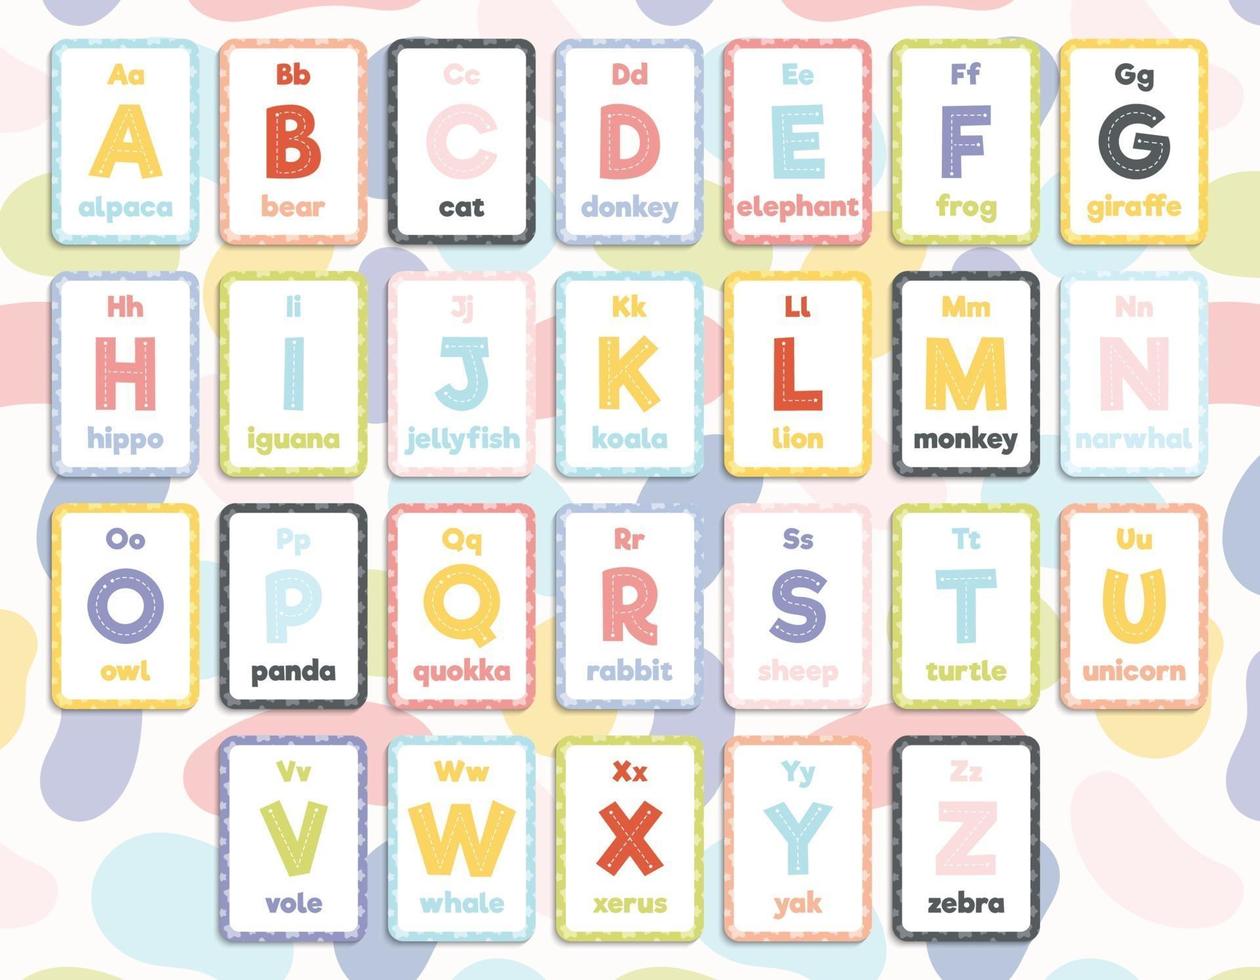 set van 26 afdrukbare Engelse alfabet flashcards vector